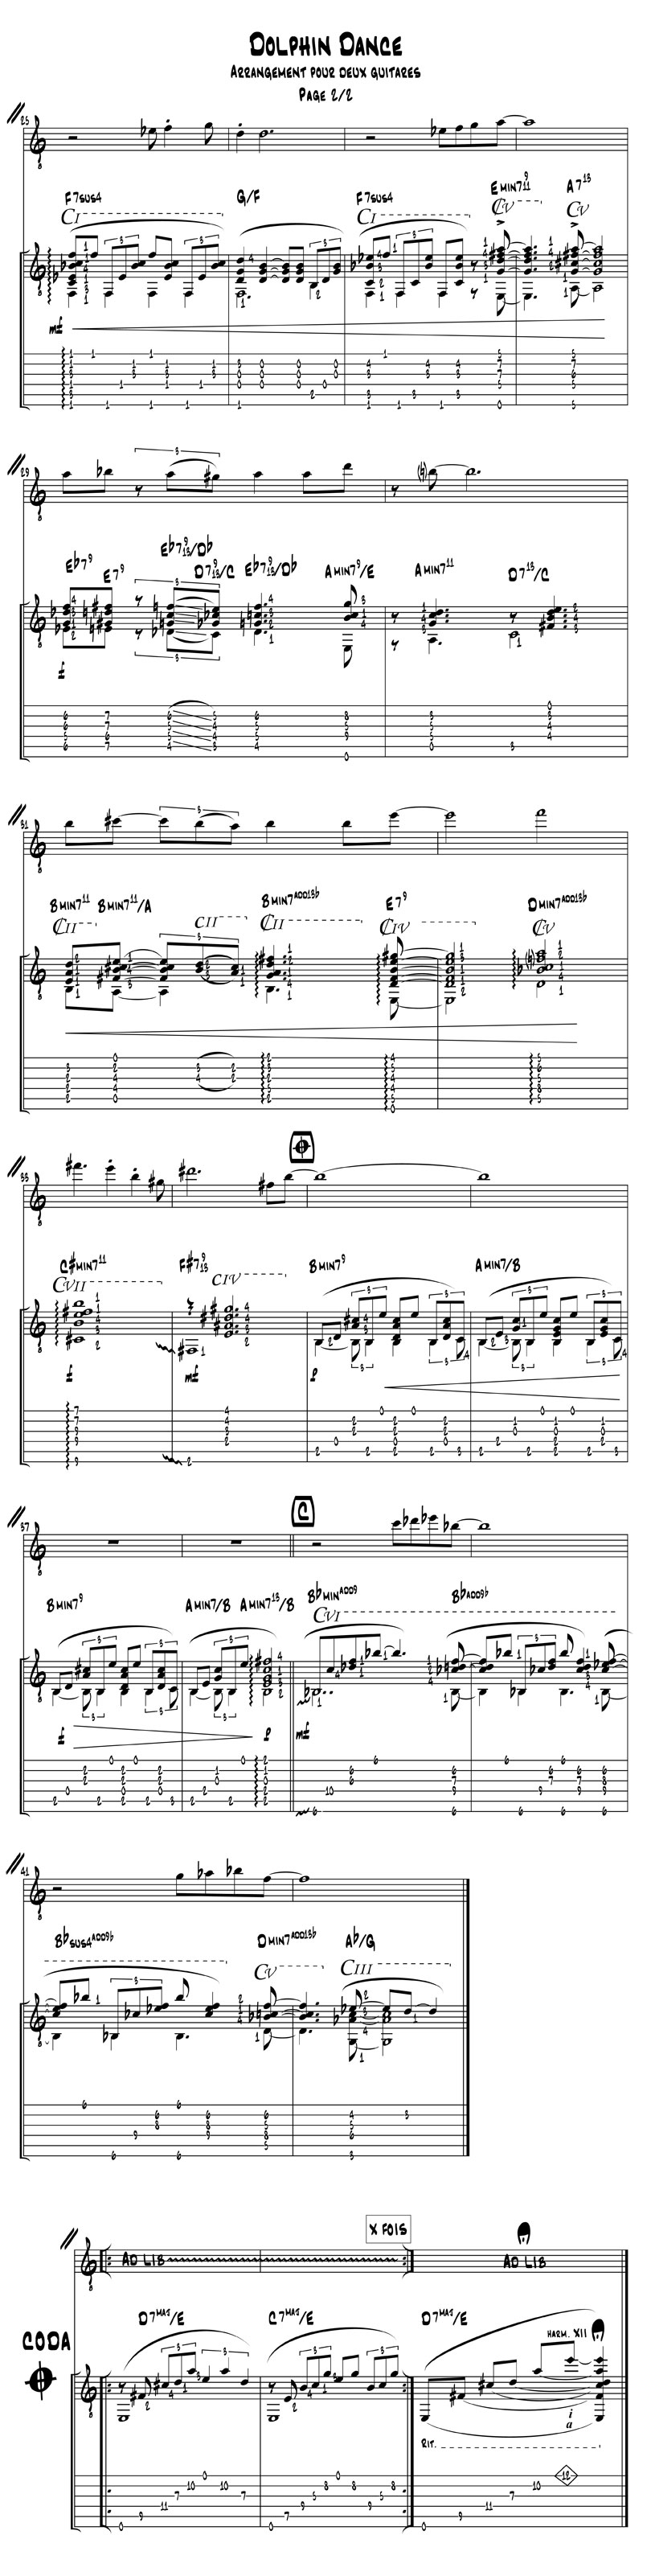 Dolphin Dance - Arrangement pour deux guitares - Partition page 2/2